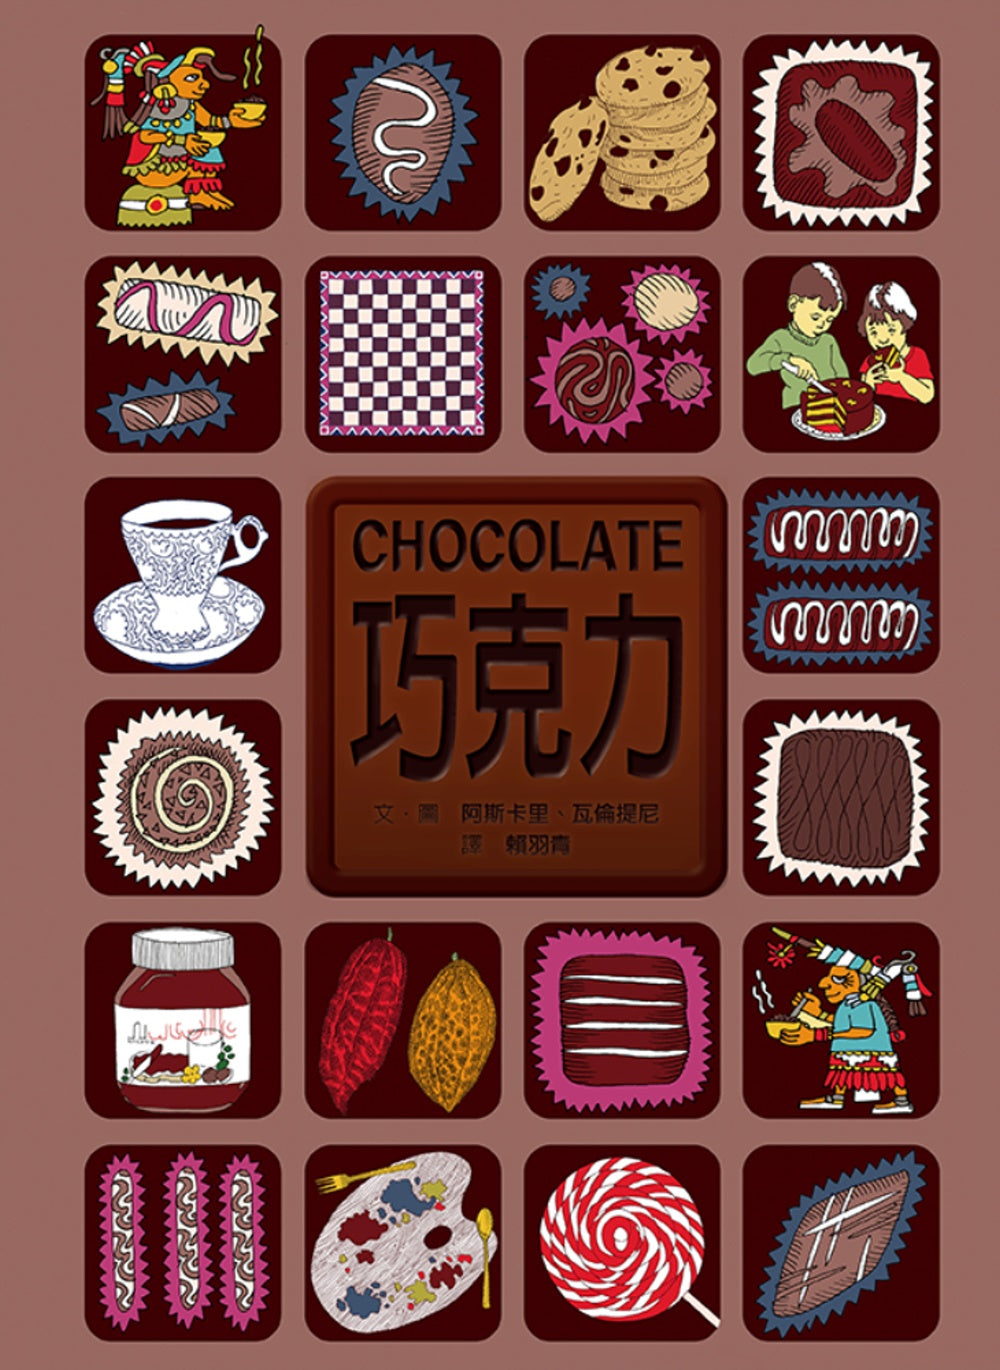 CHOCOLATE   巧克力